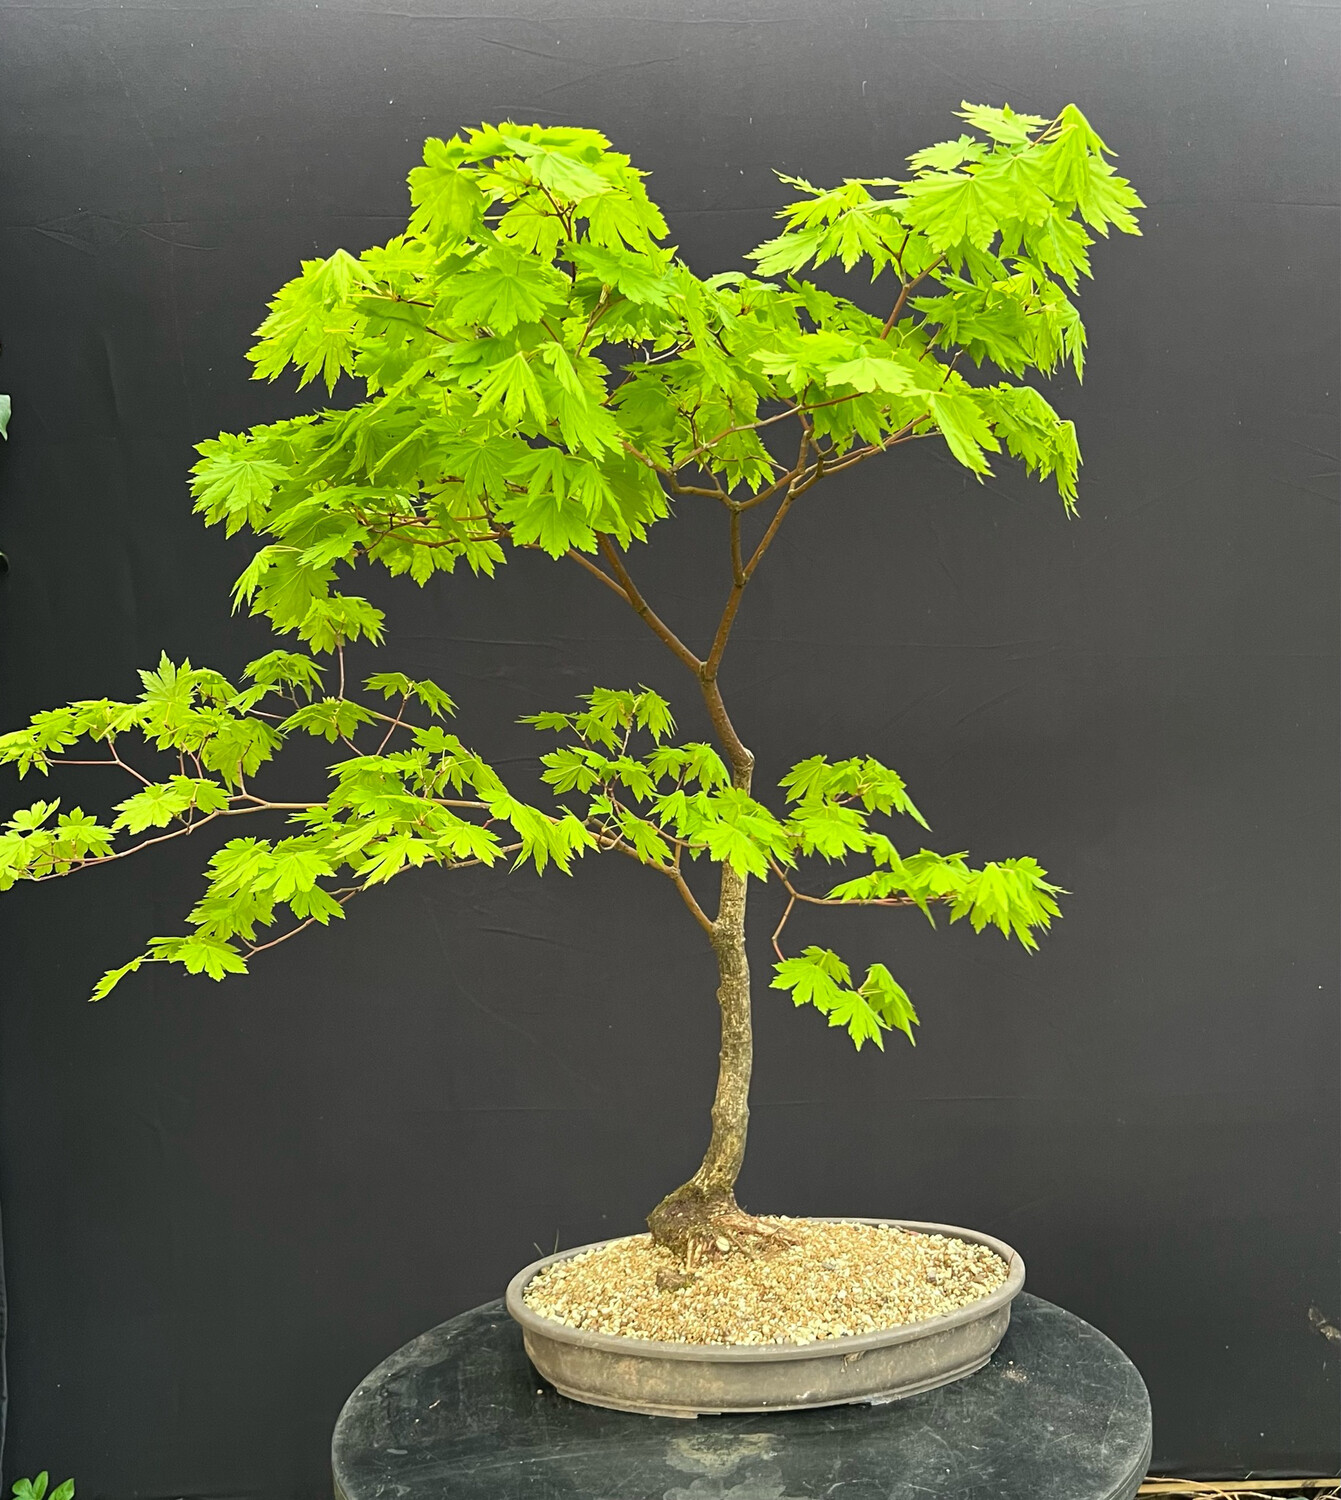 Acer palmatum shirasawanum jordan/ Jordan Full Moon Japanese Maple bonsai (green leaf)